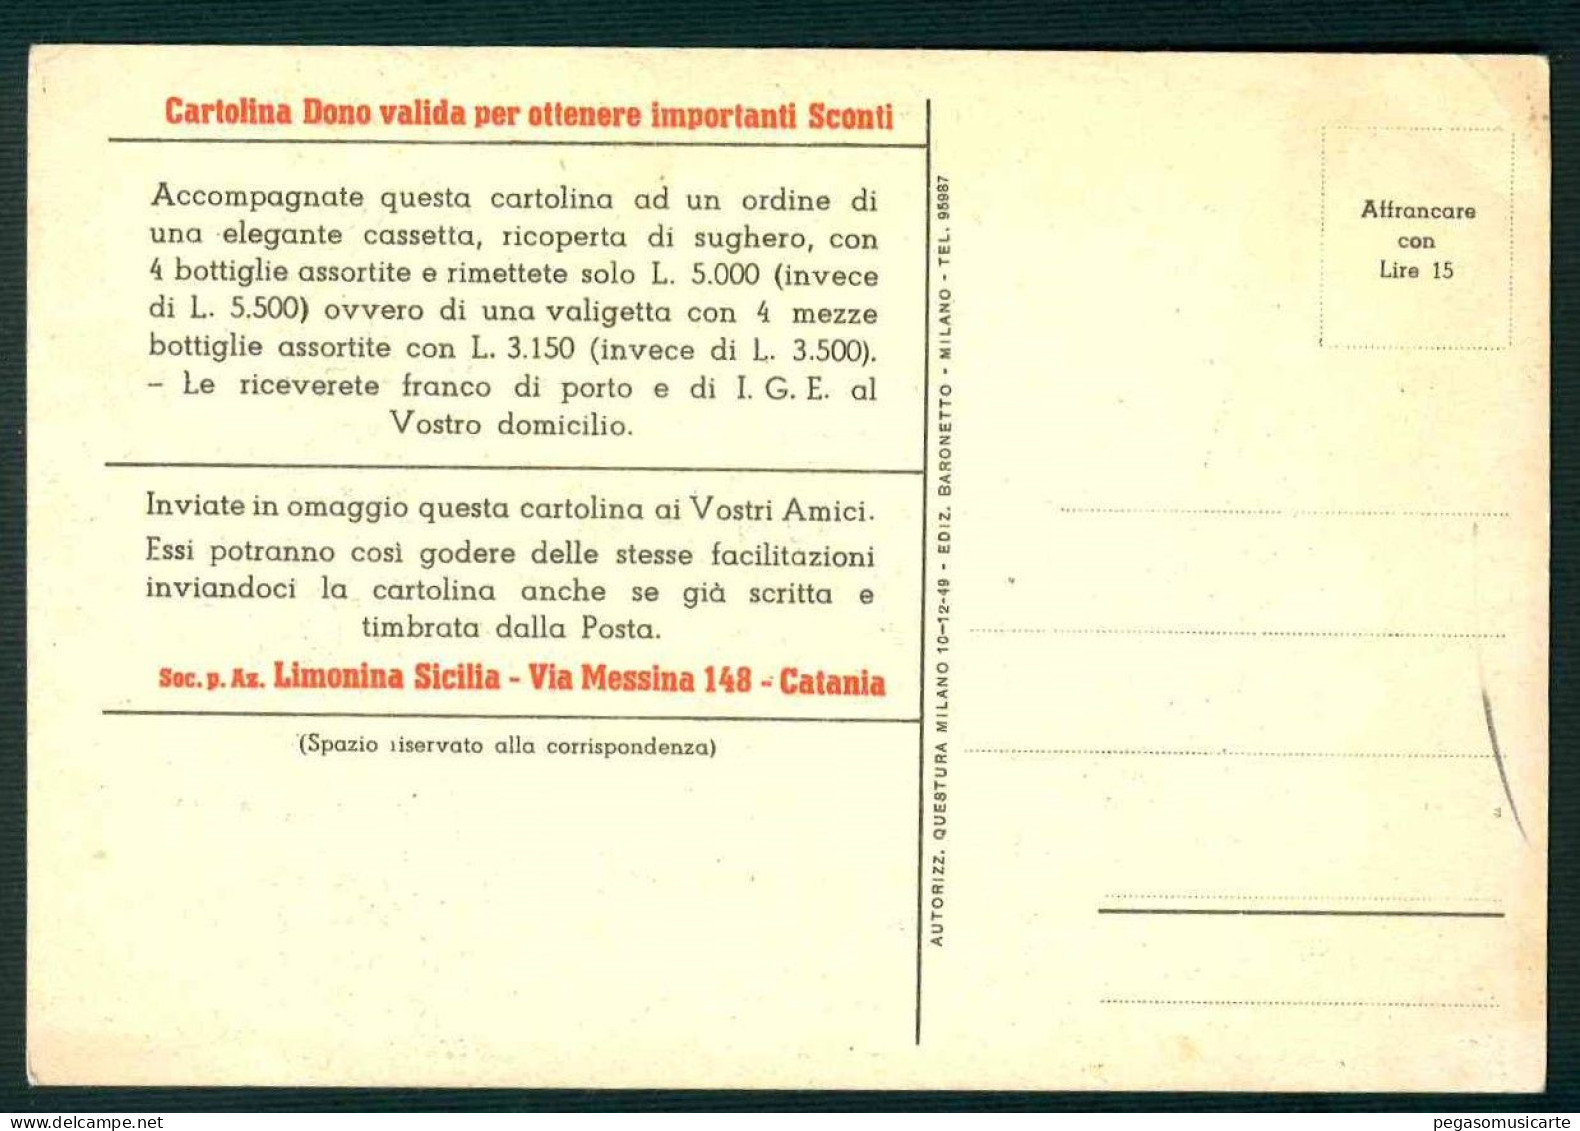 BK011 LIMONINA SICILIA CATANIA - I 4 NUOVI FINISSIMI LIQUORI - PUBBLICITARIA - Advertising